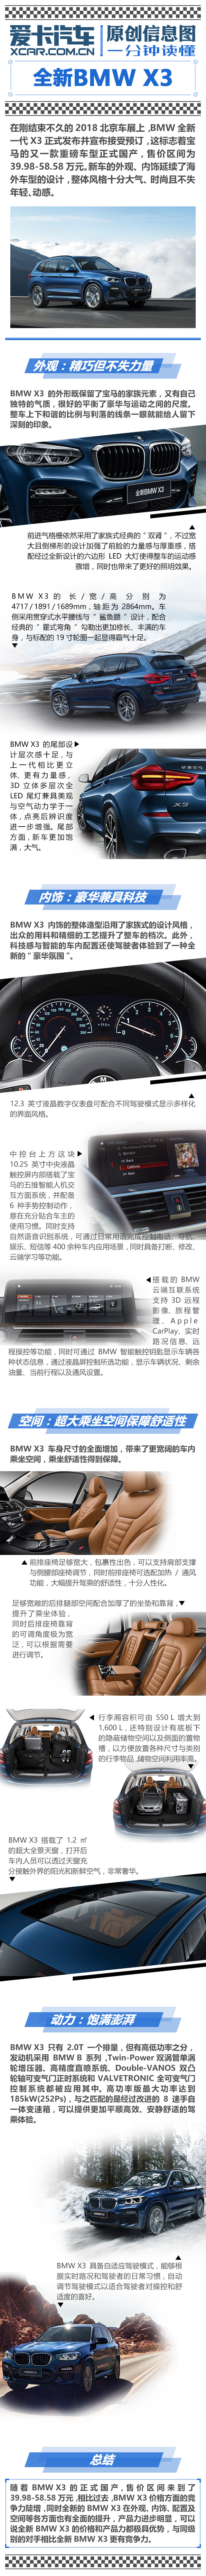 BMW X3信息图